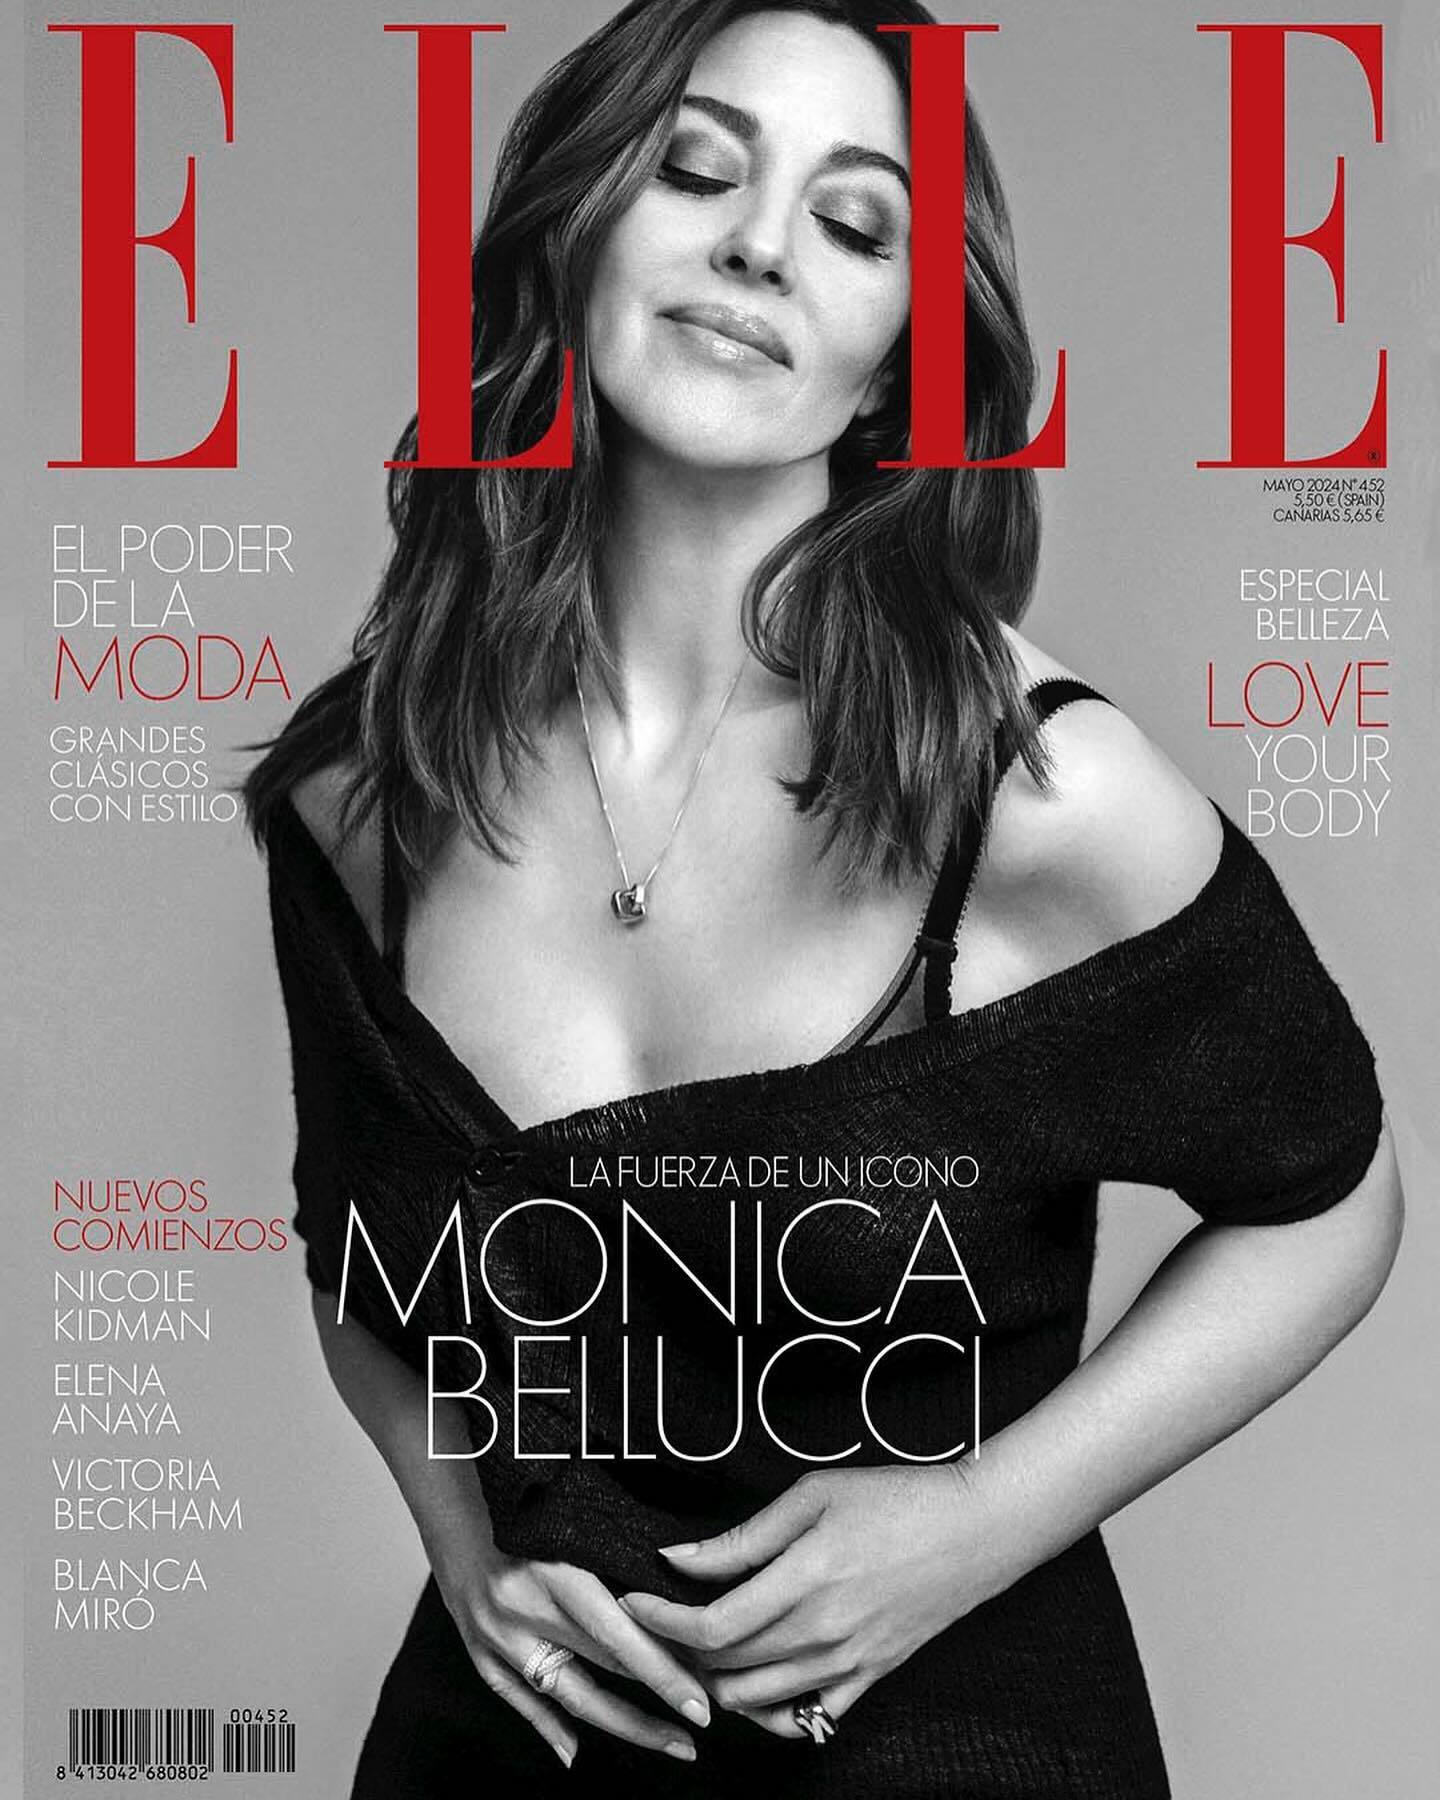 Моника Белуччи появилась на обложке Elle Spain: 59-летнюю актрису назвали самой очаровательной женщиной века